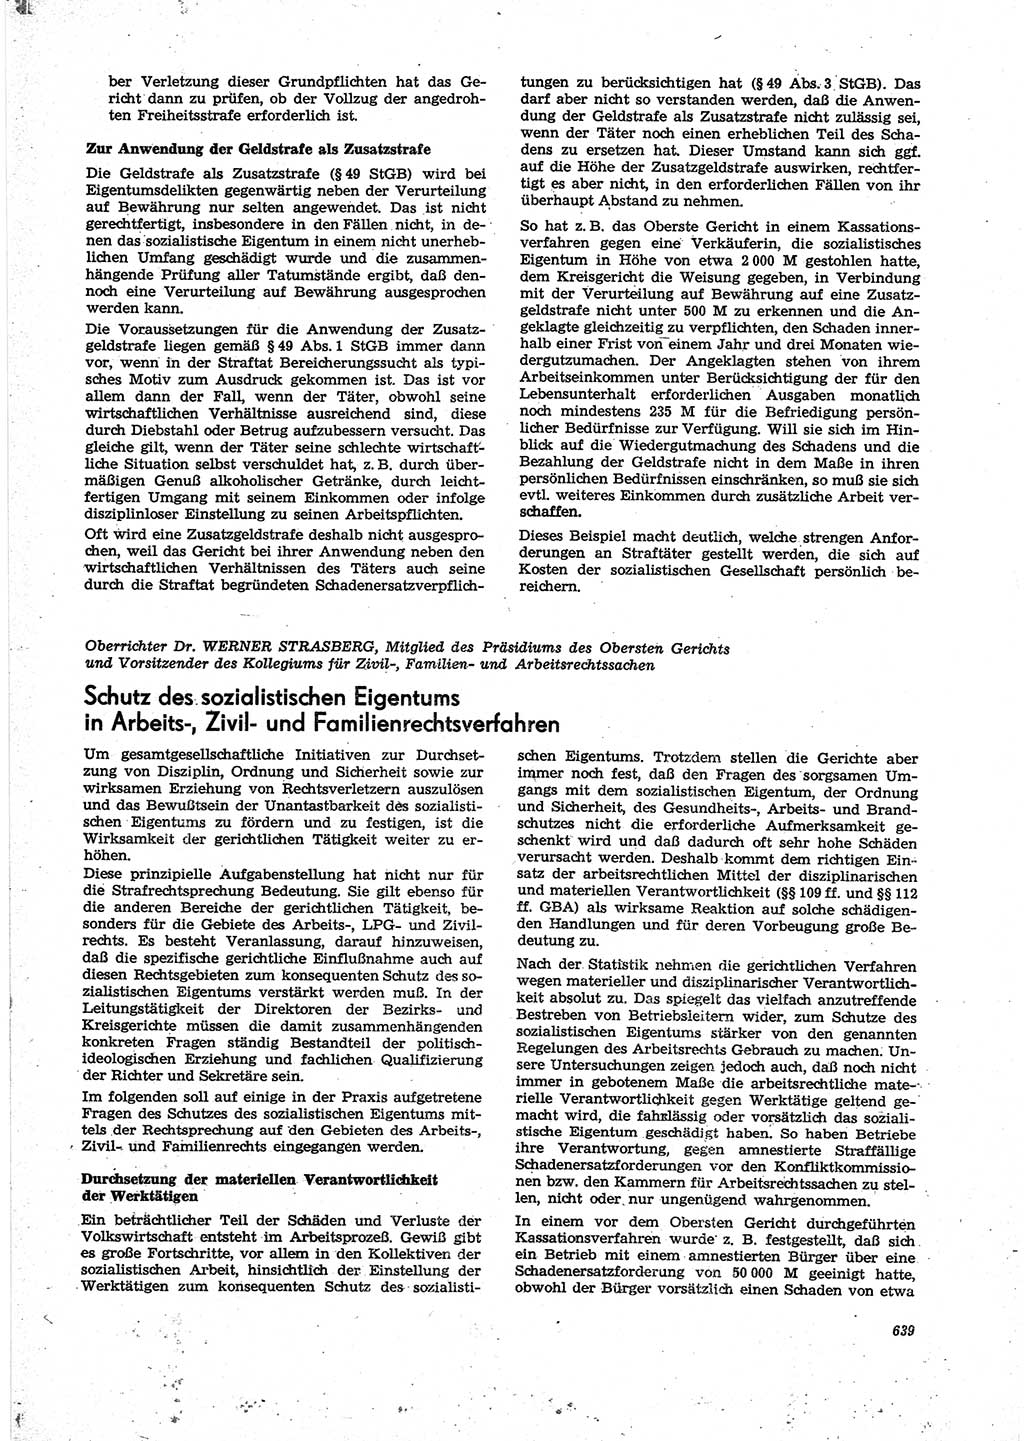 Neue Justiz (NJ), Zeitschrift für Recht und Rechtswissenschaft [Deutsche Demokratische Republik (DDR)], 27. Jahrgang 1973, Seite 639 (NJ DDR 1973, S. 639)